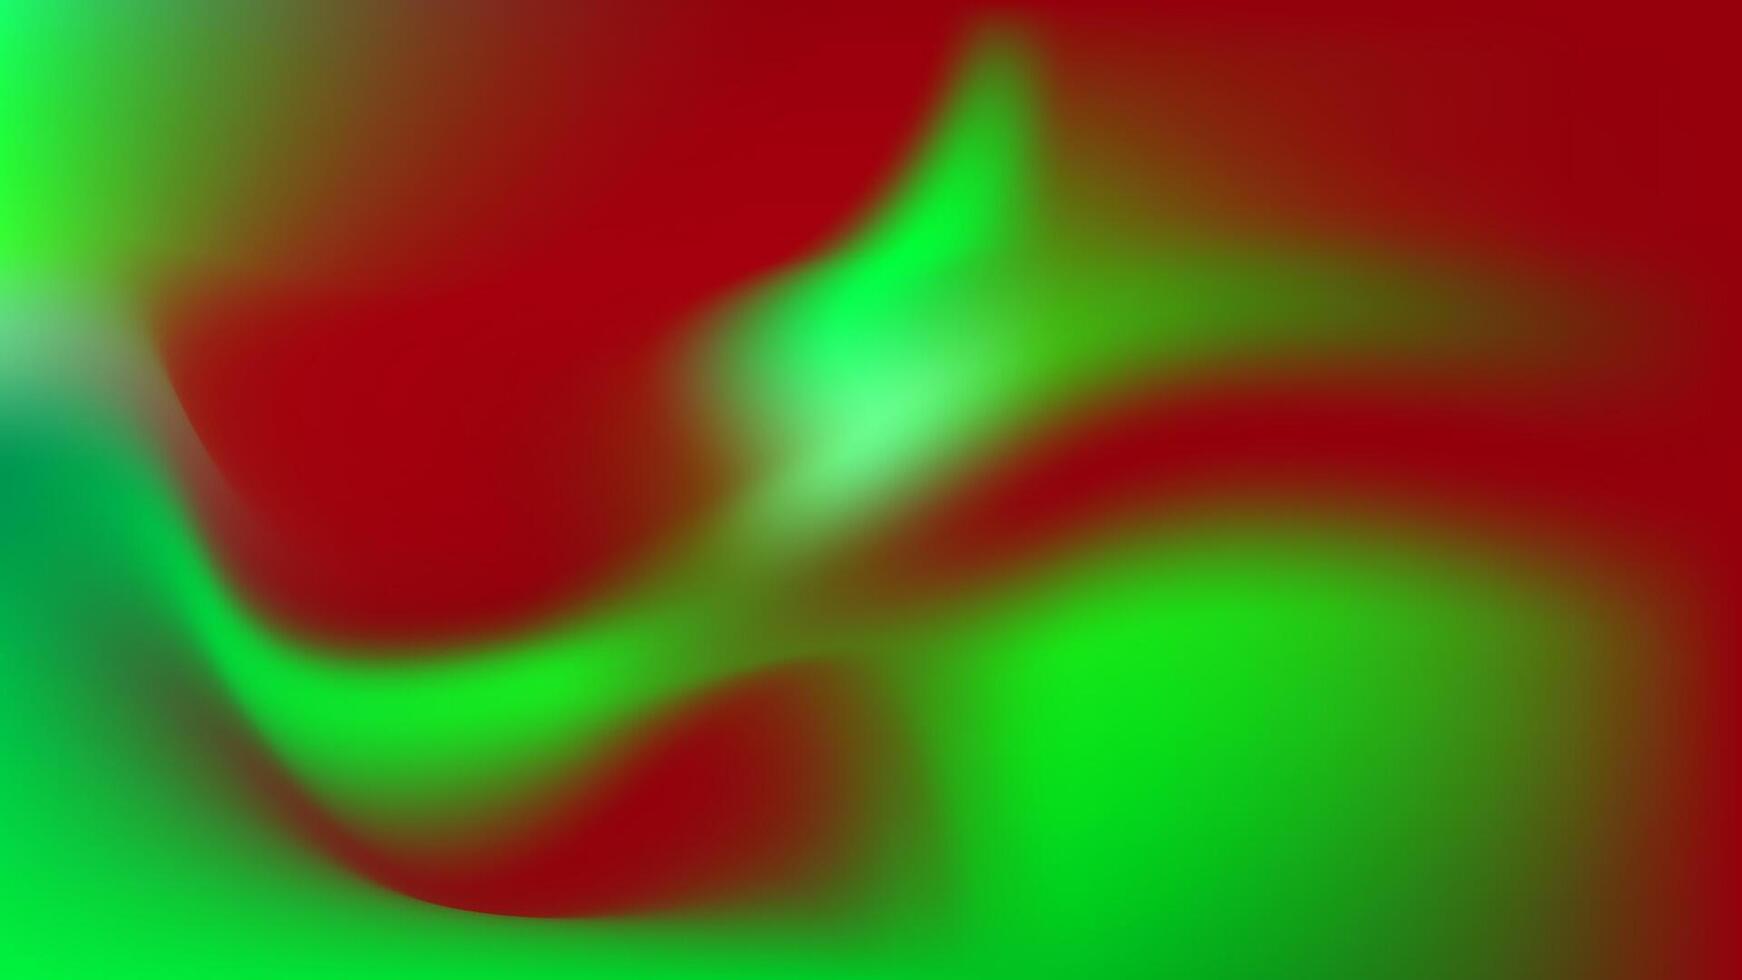 astratto geometrico sfondo elegante pendenza maglia rosso verde colore design vettore modello bene per moderno sito web, sfondo, copertina design